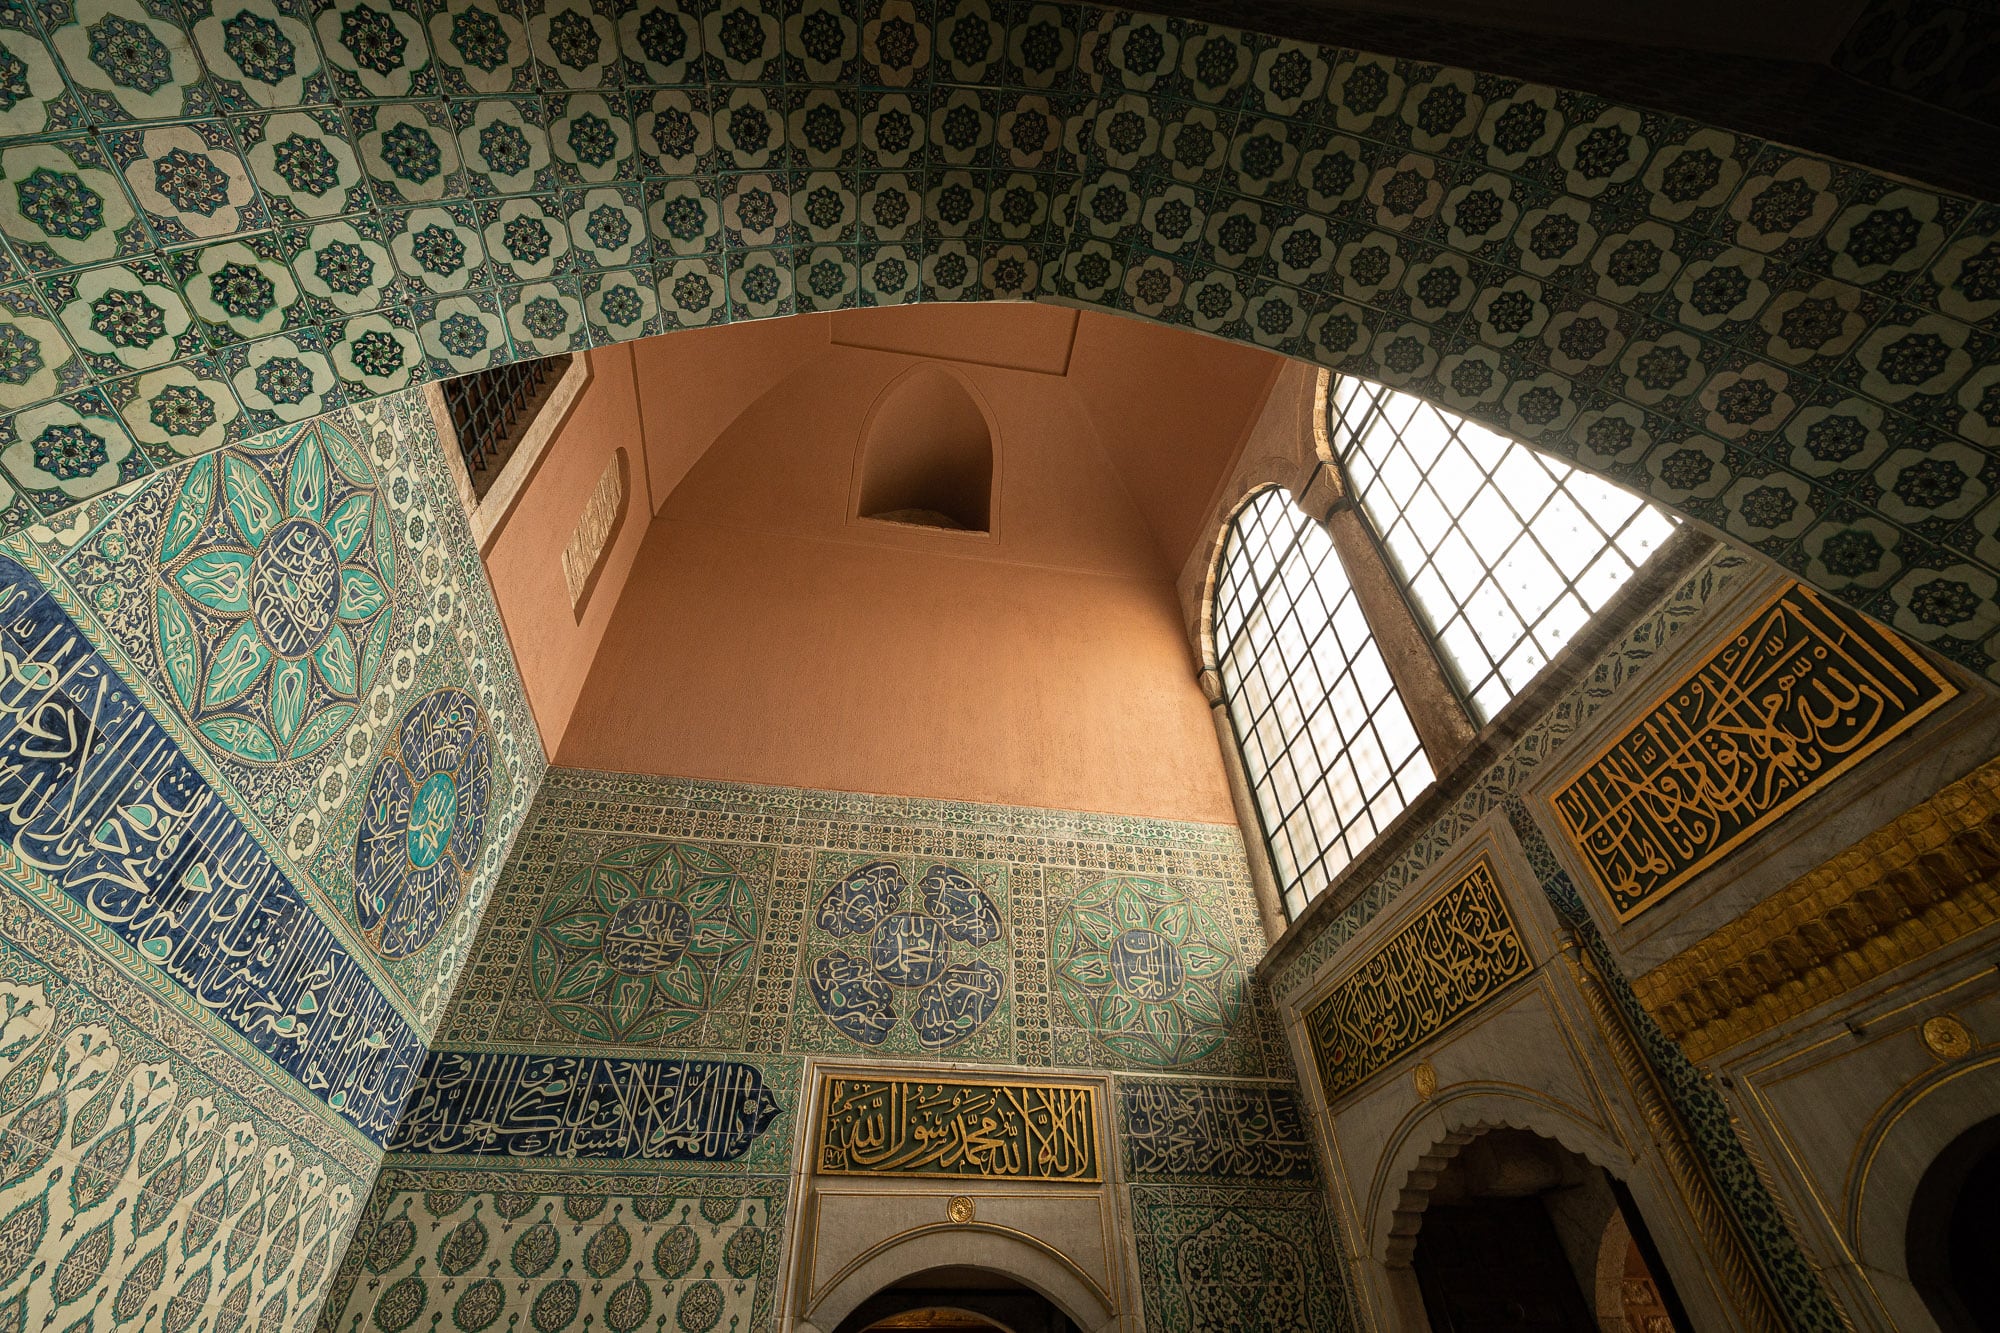 tile work in Topkapı Palace